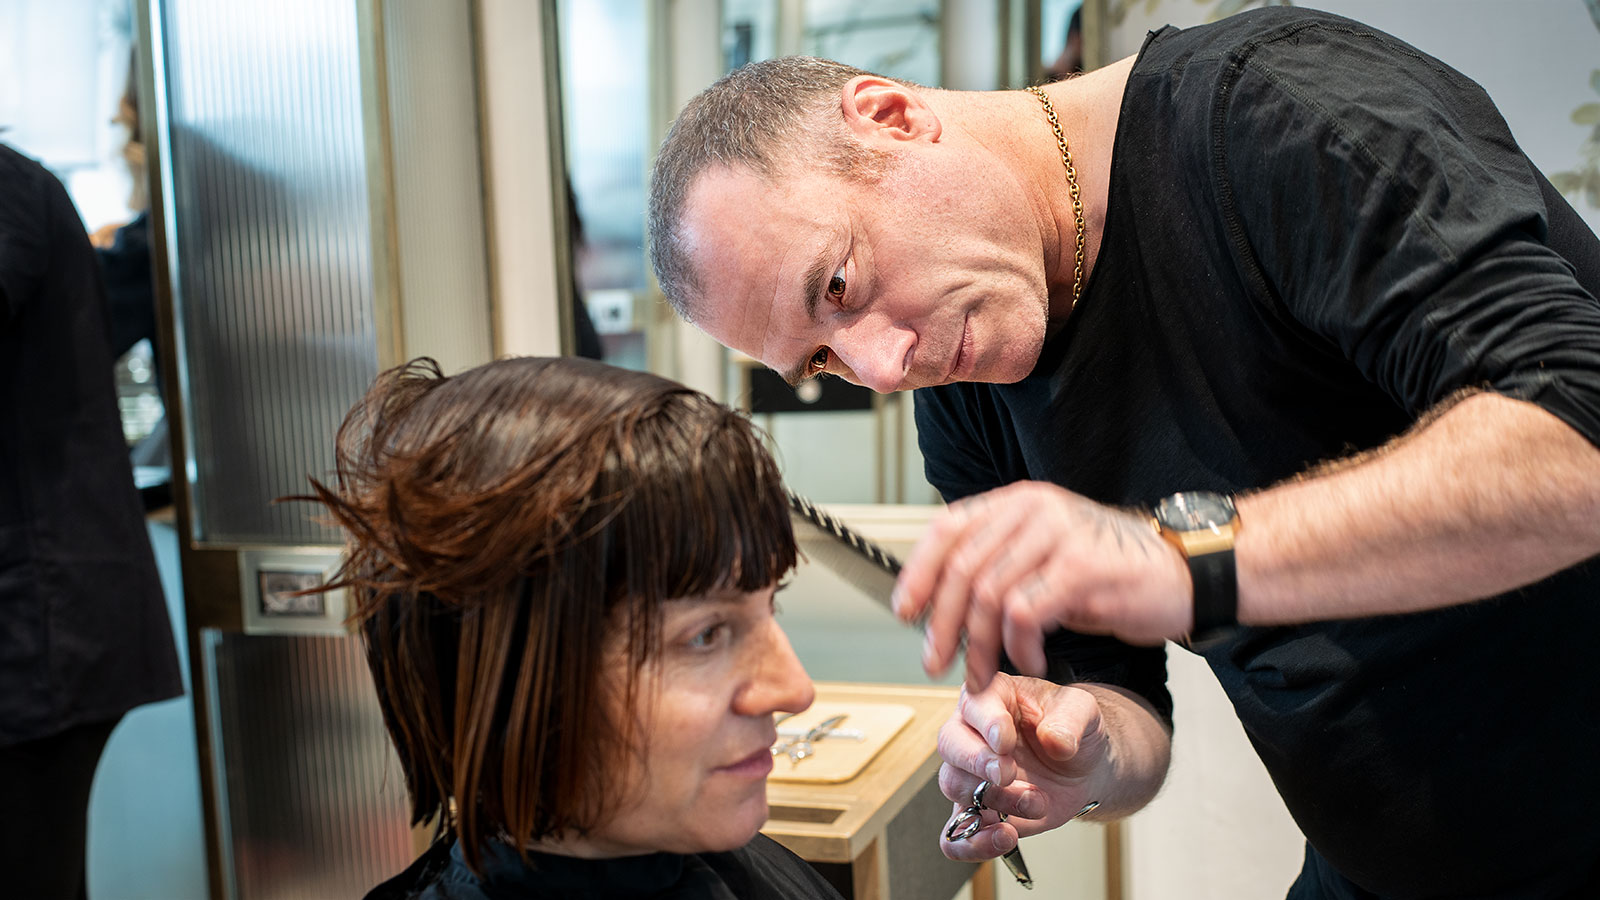 Mauro Basso, einer der besten italienischen Friseure, beim Schneiden der Haare eines Kunden